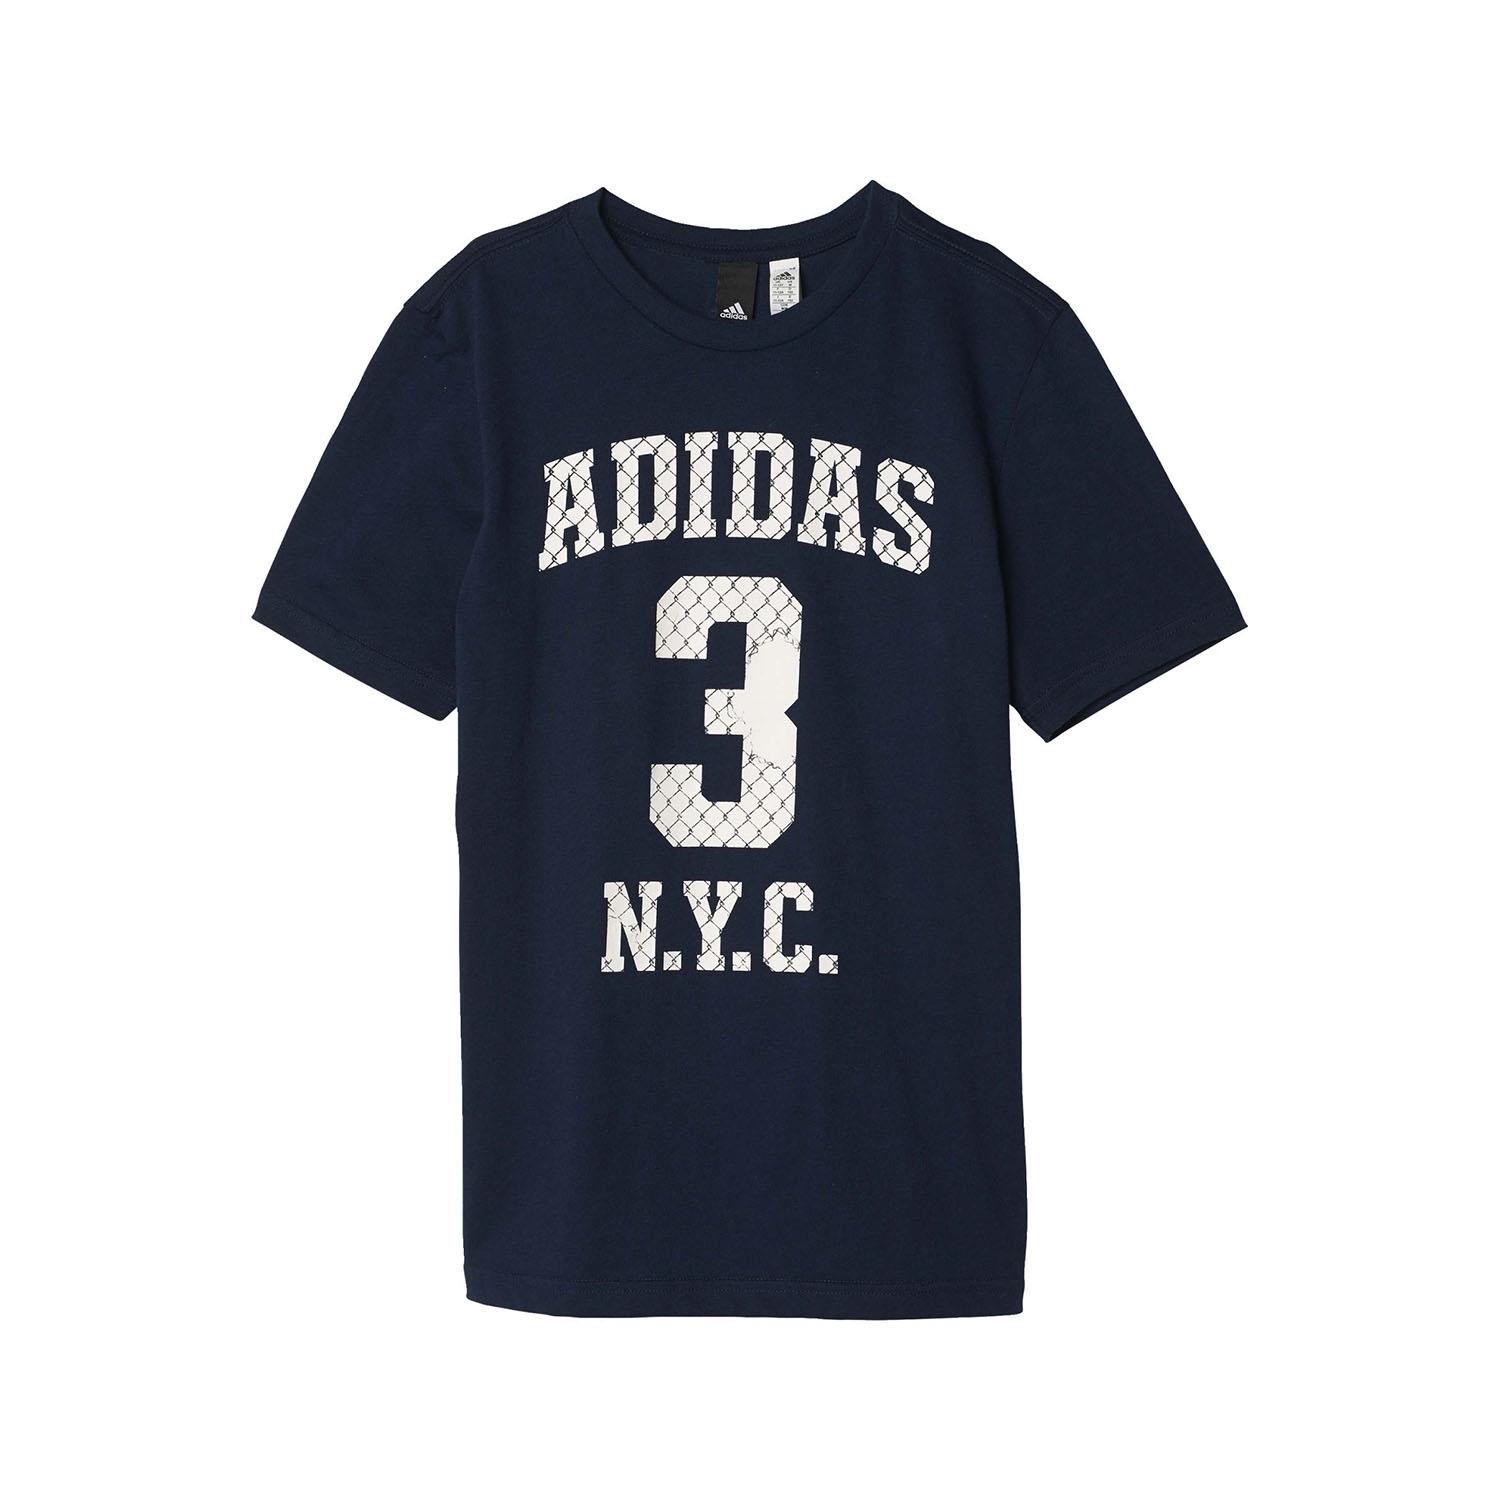 Adidas chlapčenské tričko S97027 NUMBER, veľ. 152